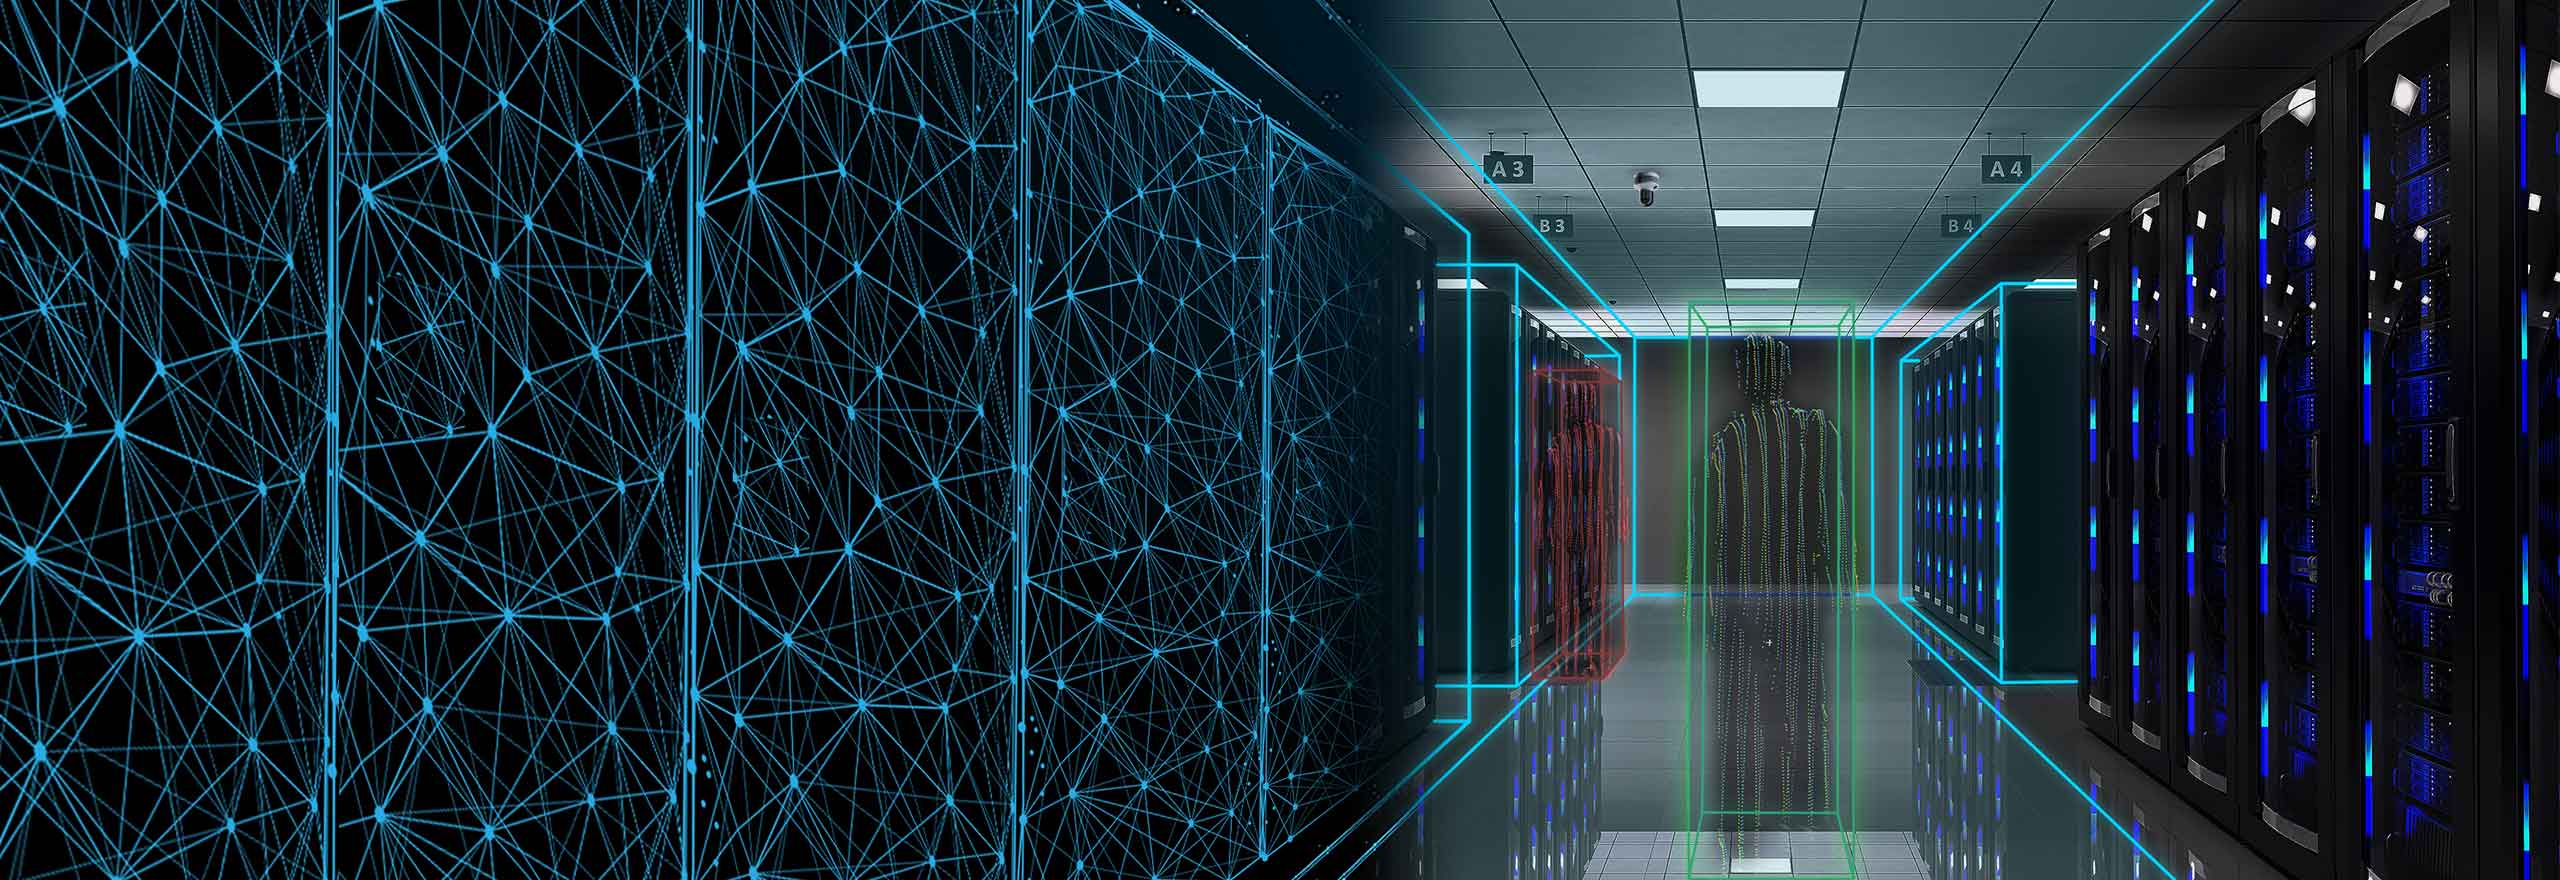 A digitalised server room